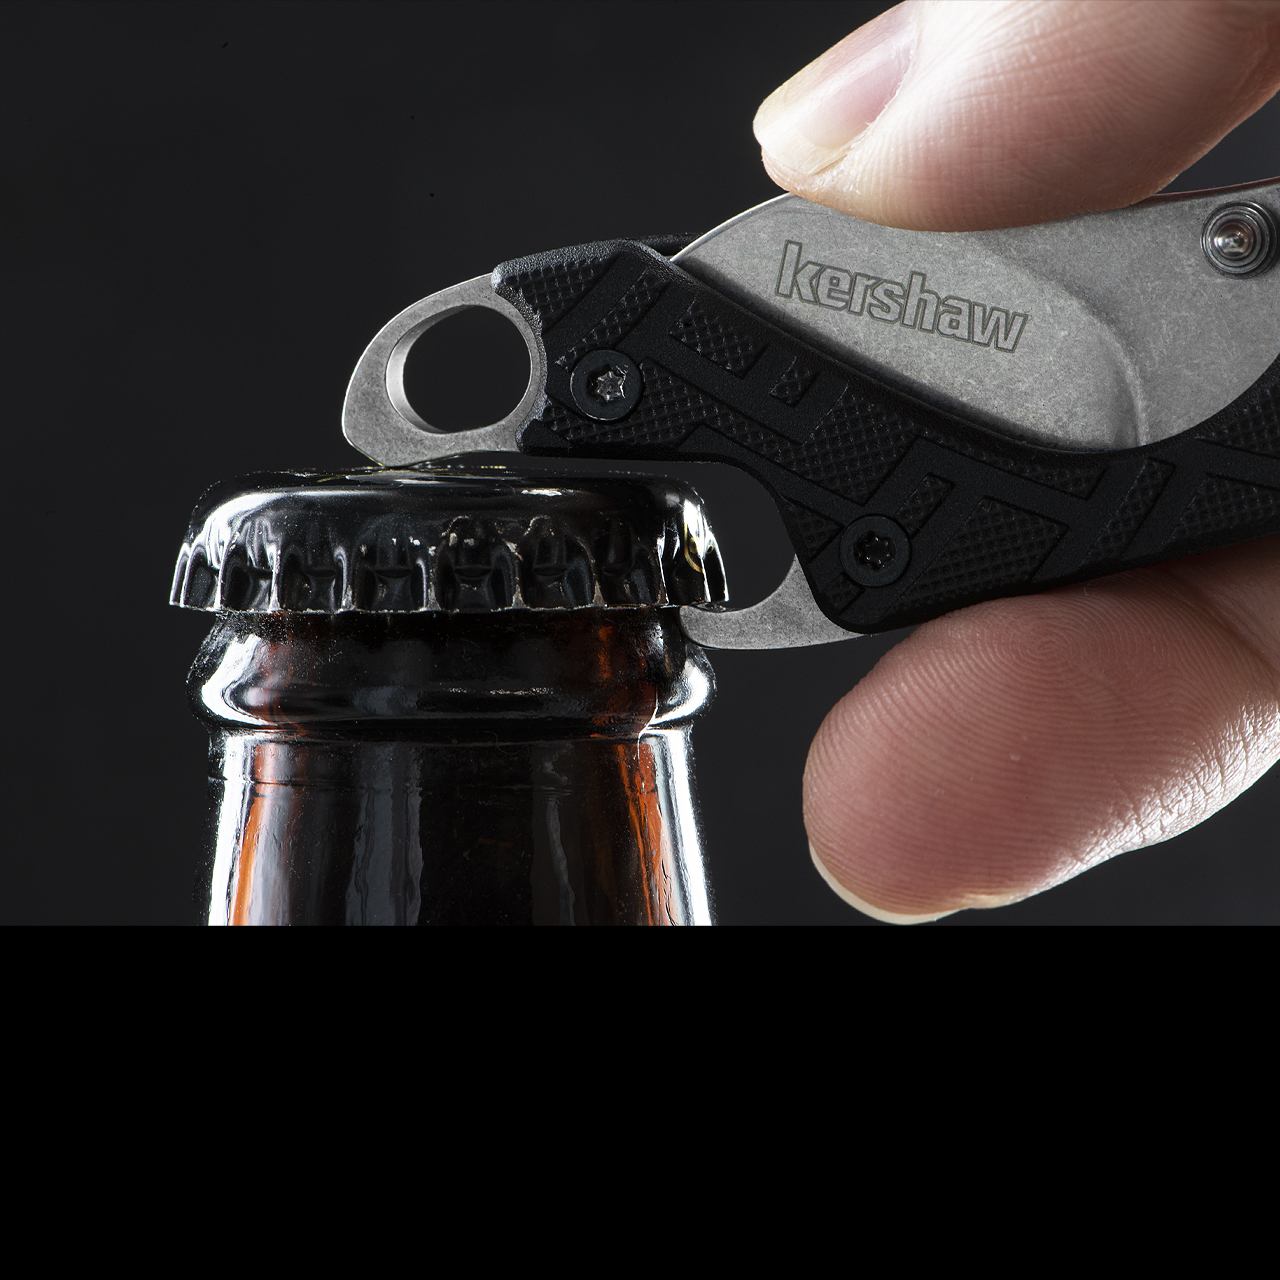 Kershaw 1025 Cinder Keychain Folding Knife 1.4 Stonewashed Blade, Zytel  Handles - KnifeCenter - 1025X